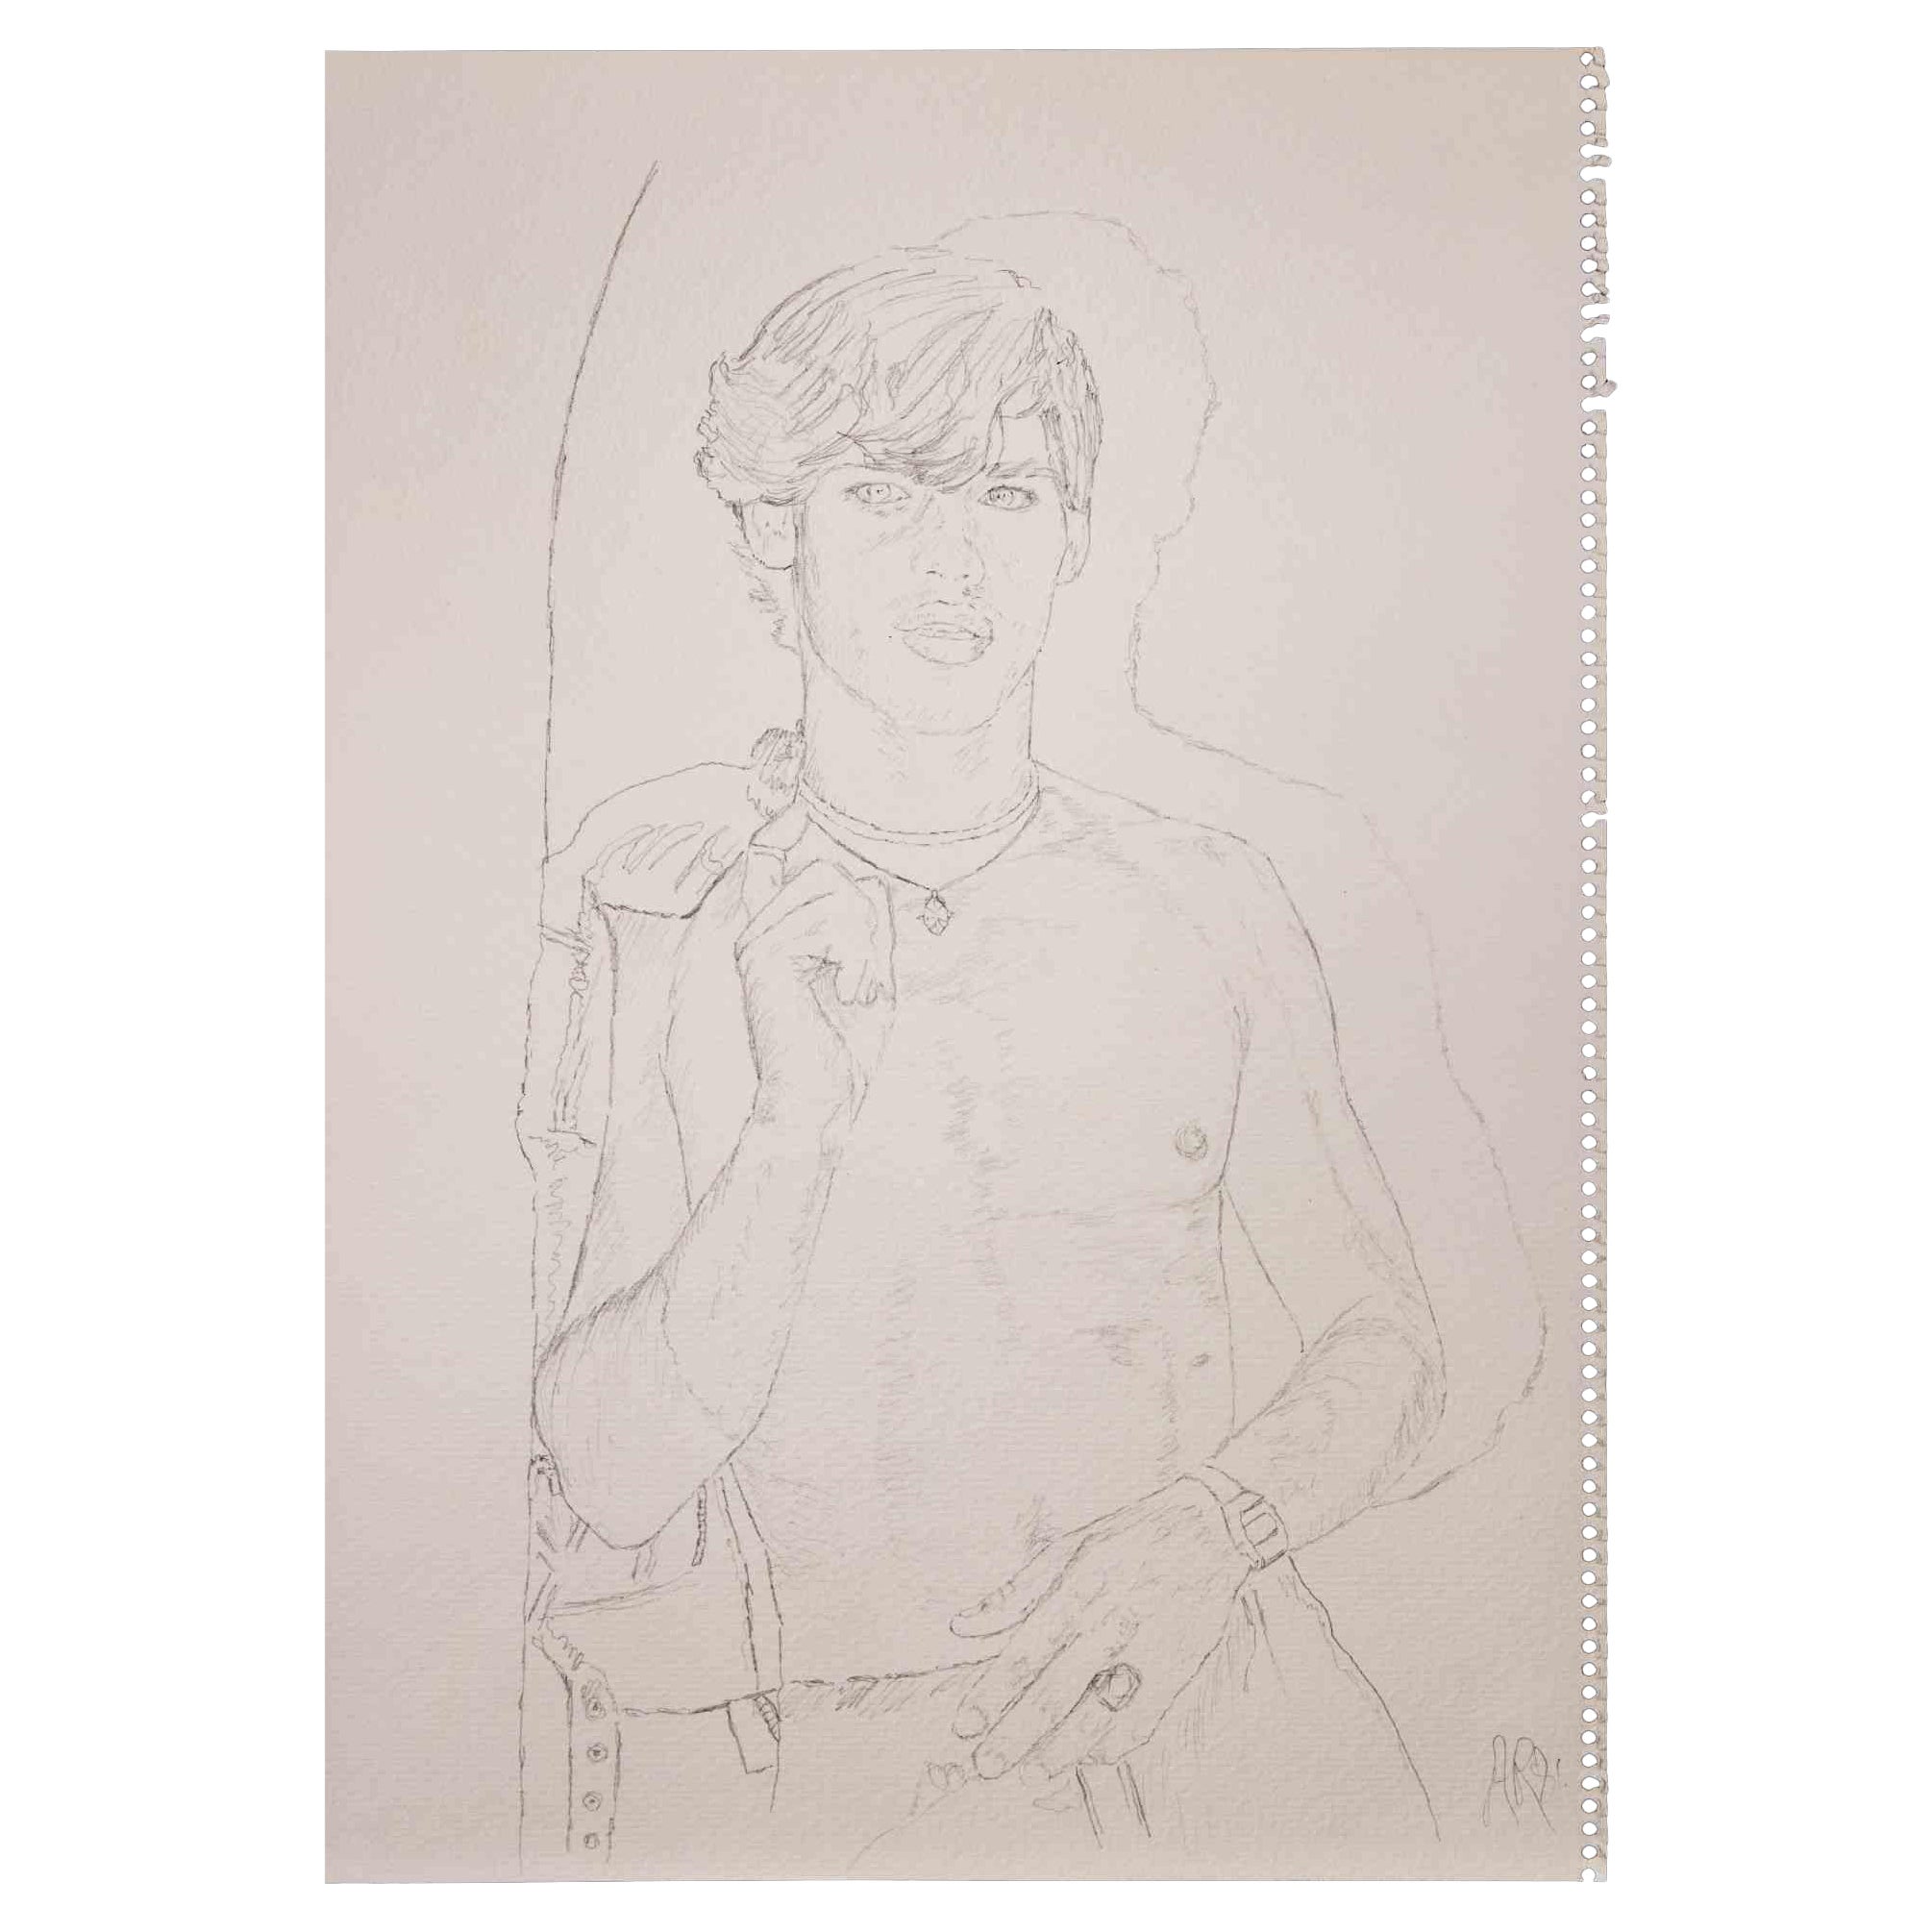 Porträt eines Jungen  ist eine Originalzeichnung mit Bleistift von Anthony Roaland aus dem Jahr 1981. Handsigniert und datiert vom Künstler am unteren rechten Rand. 

Der Künstler stellt ein zartes, schönes männliches Porträt in einem harmonischen